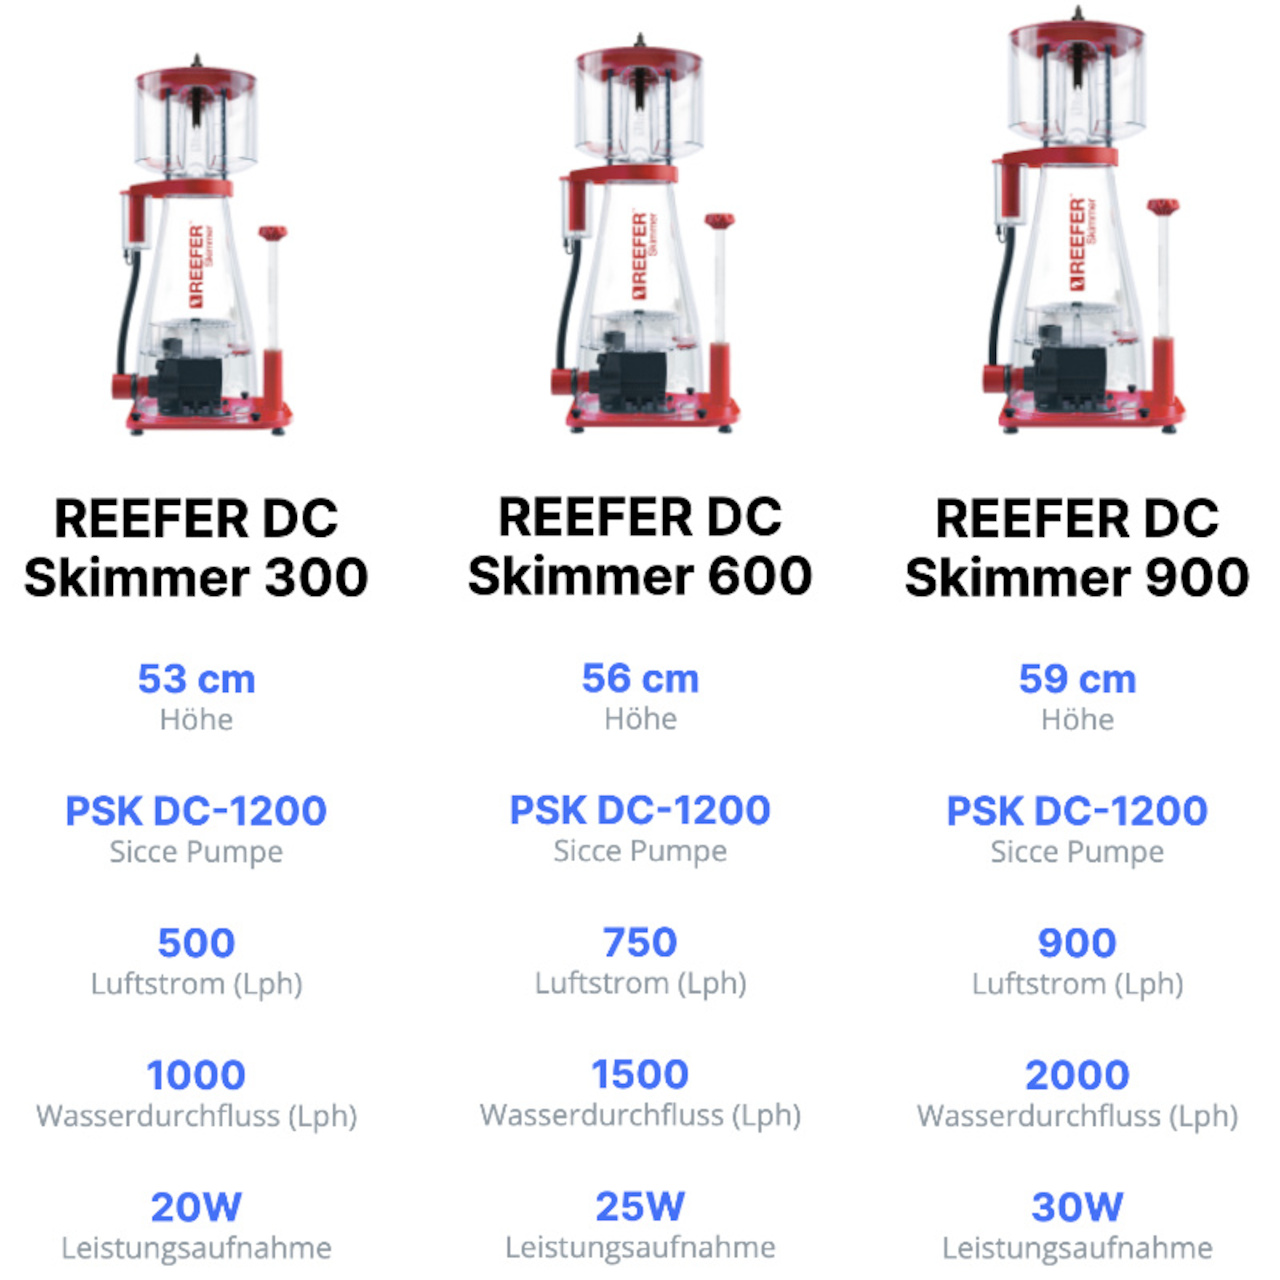 Red Sea Reefer DC Skimmer 900